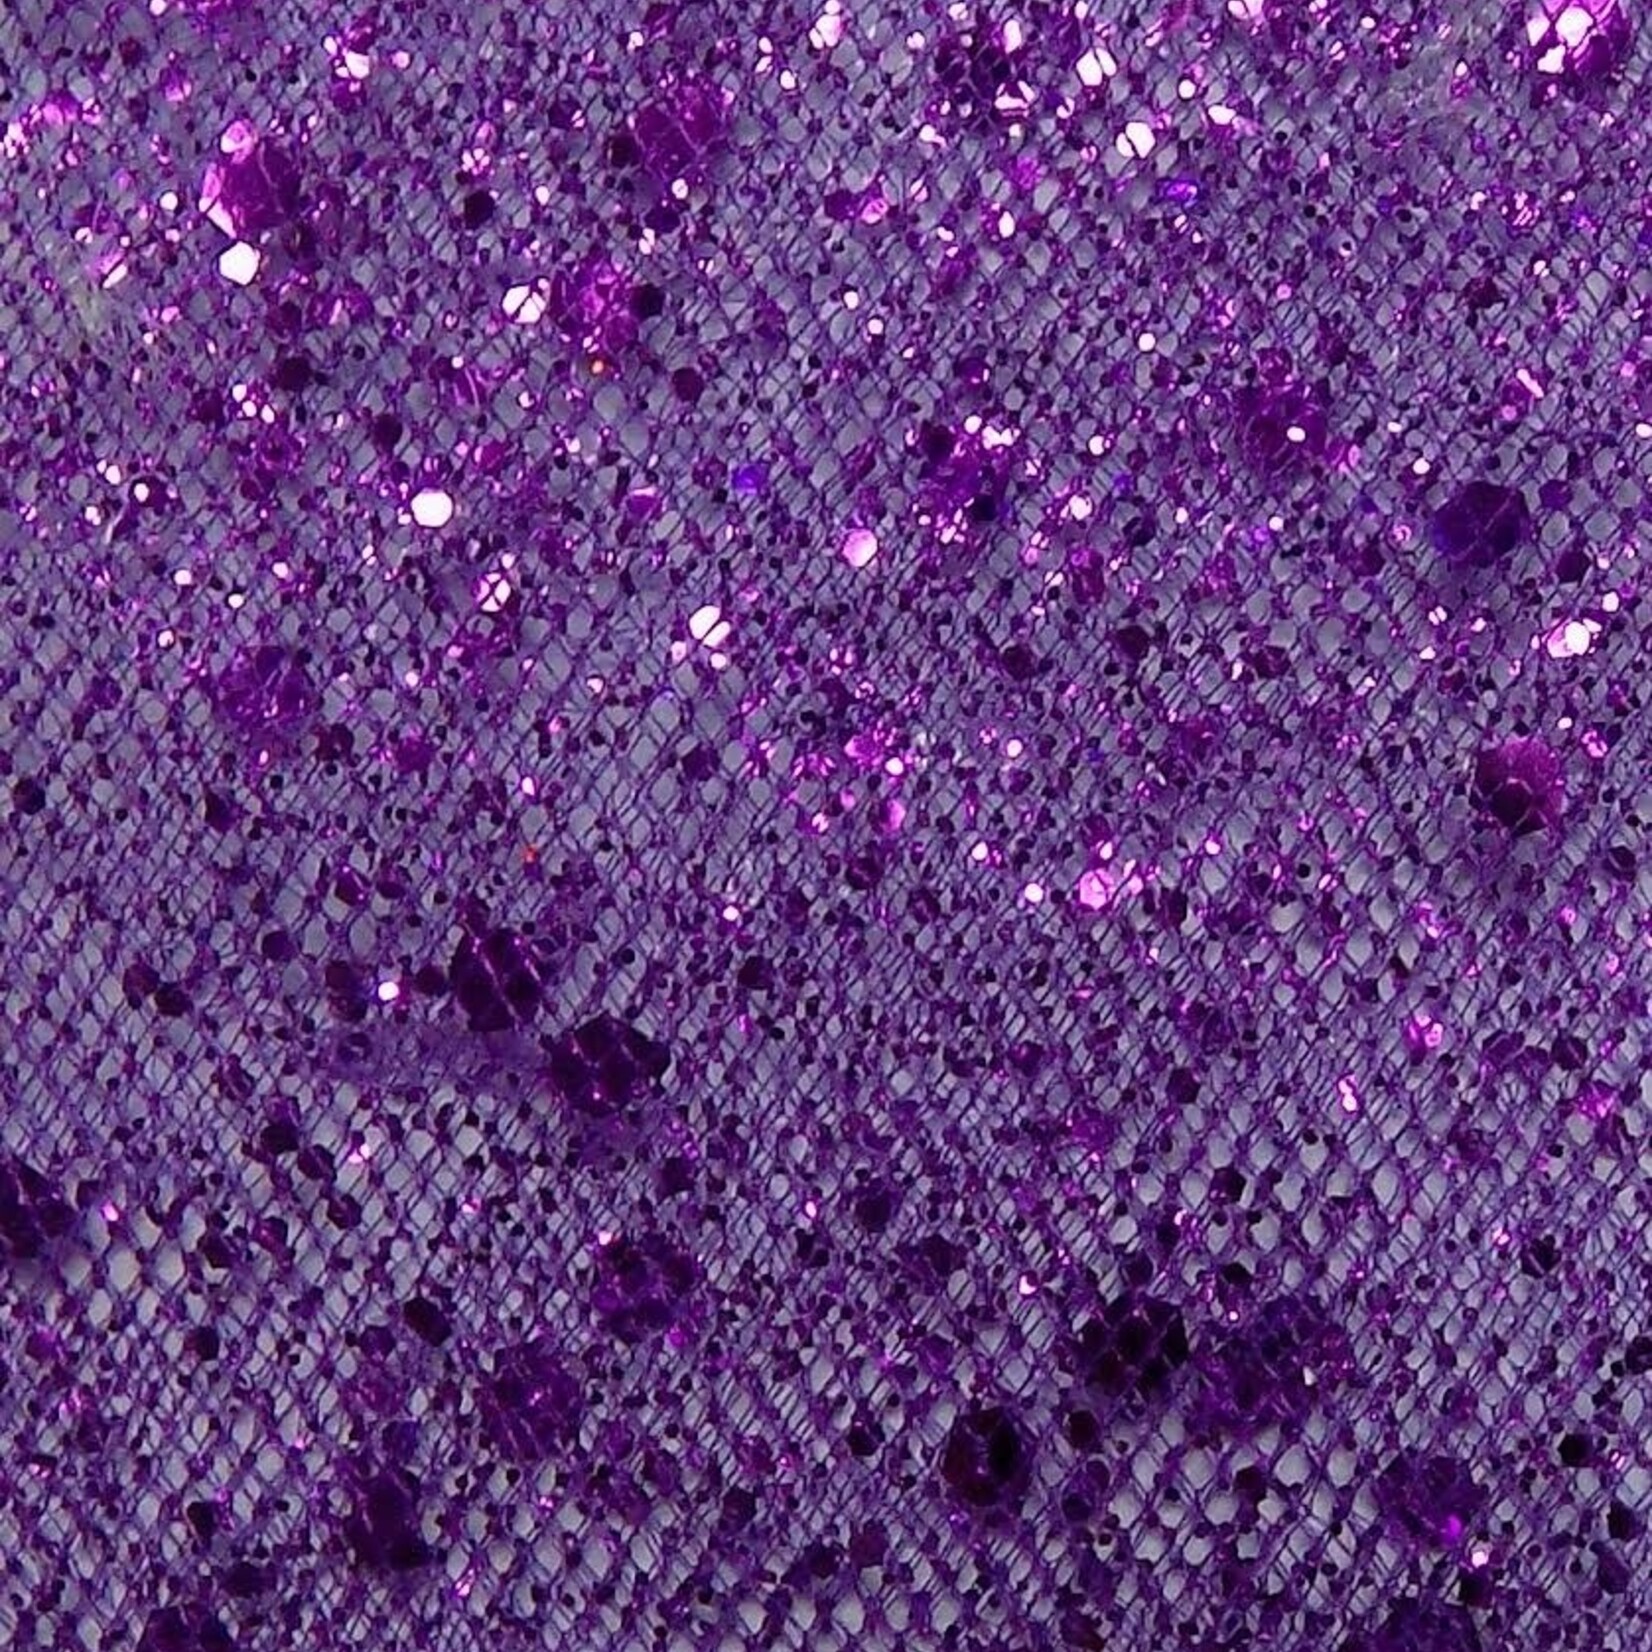 Glitter Mesh Non-stretch 58-60 Inches - Purple